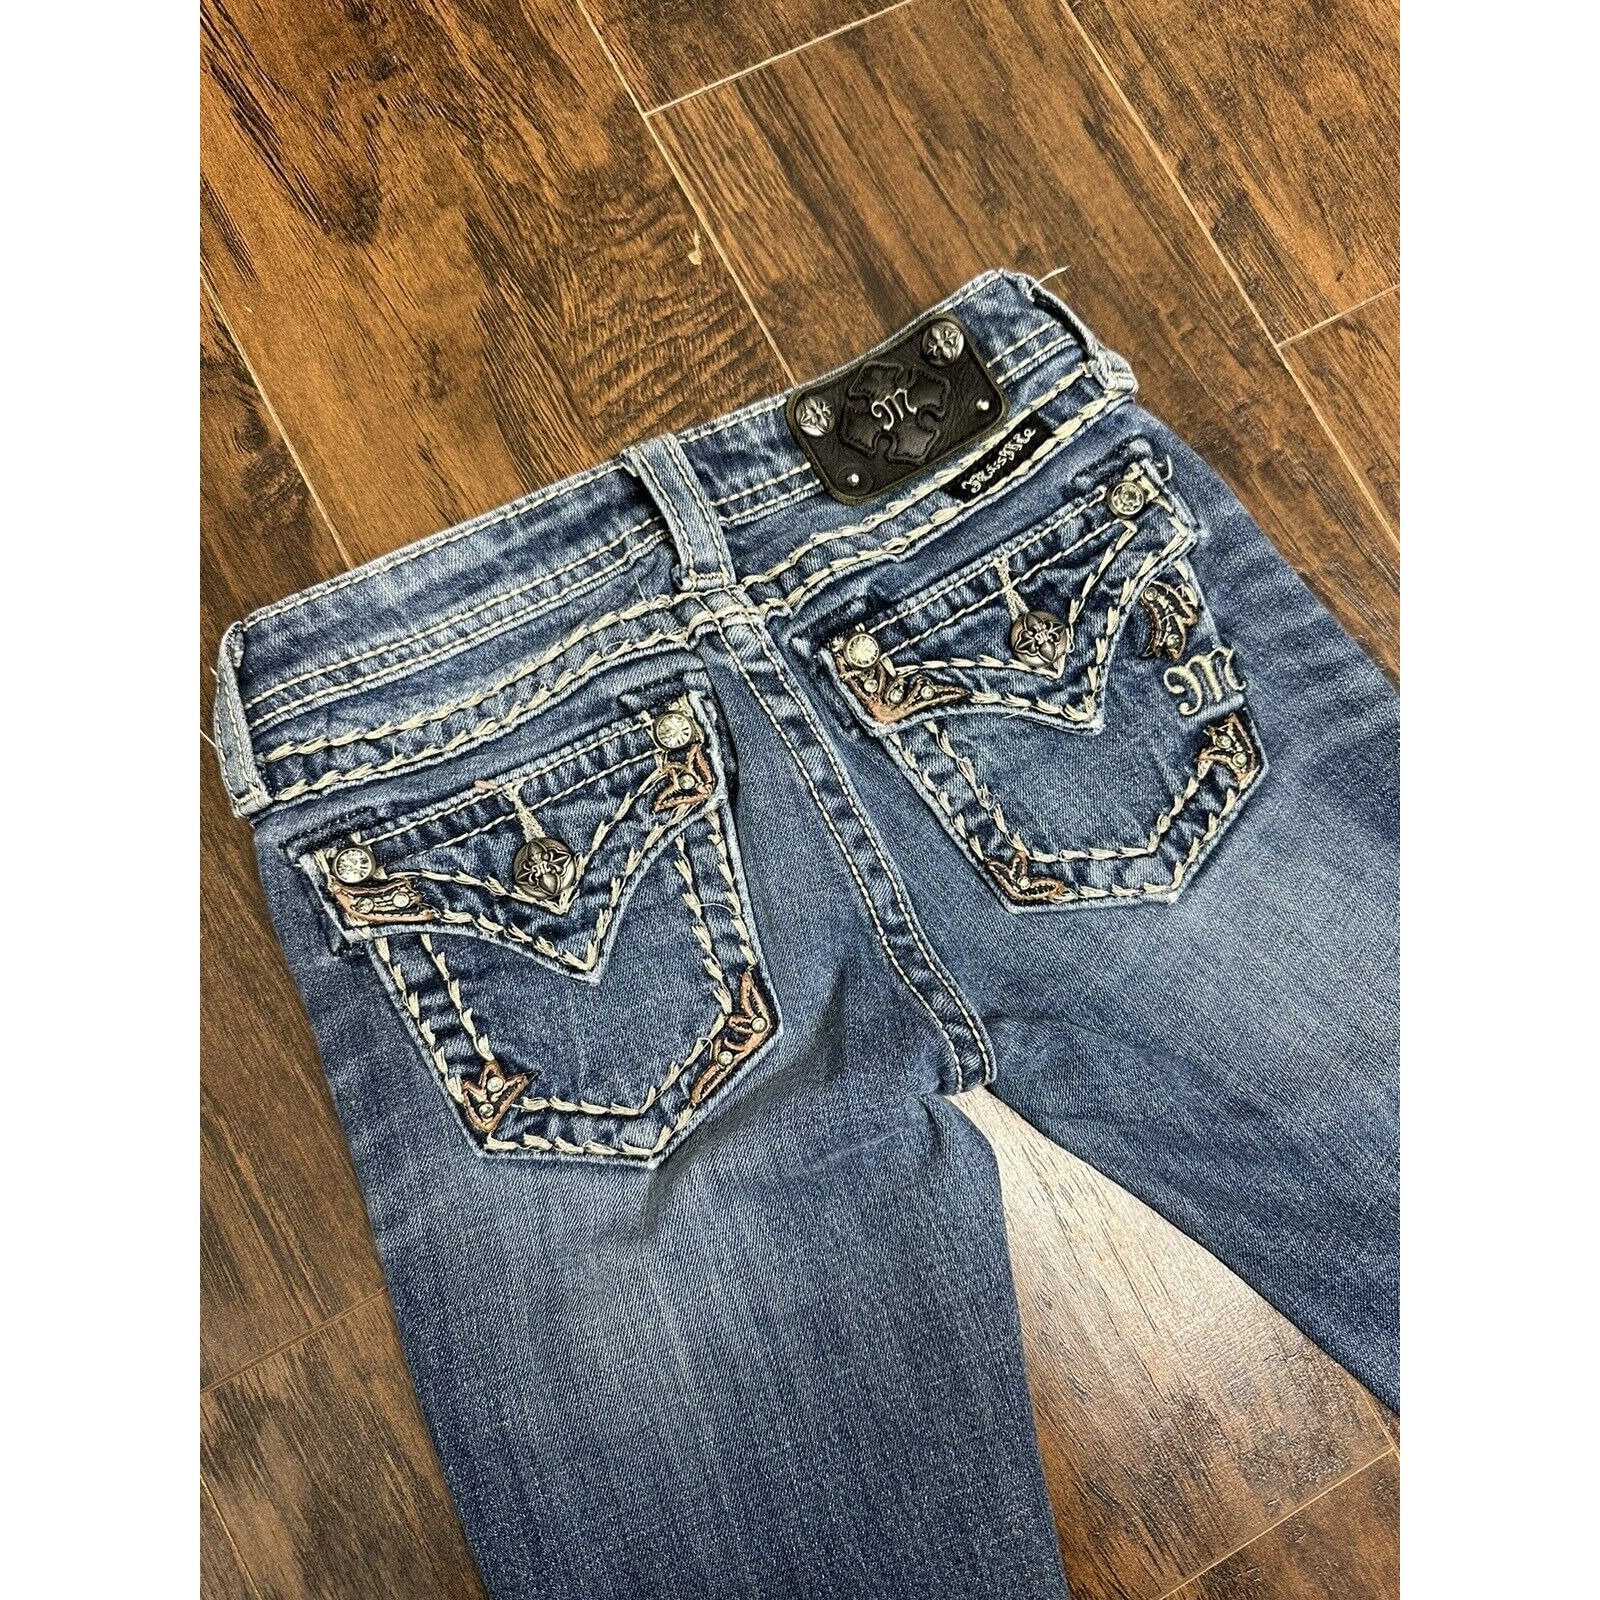 Rhinestones Jeans 